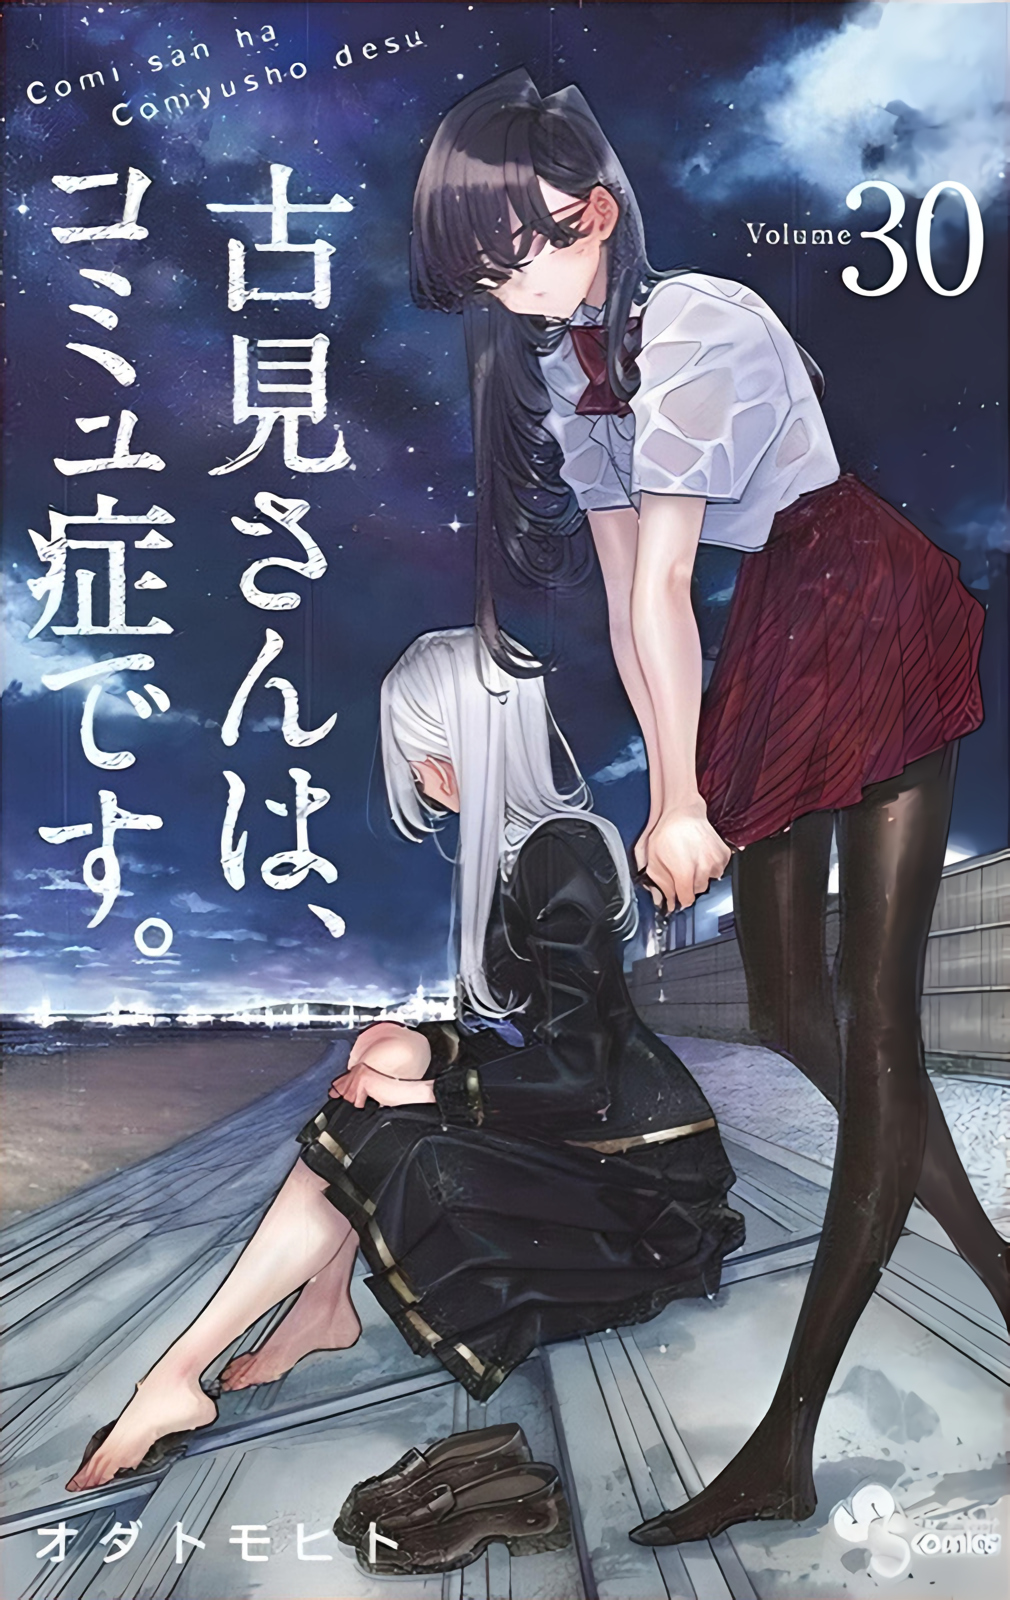 Volume 30, Komi-san wa Komyushou Desu Wiki